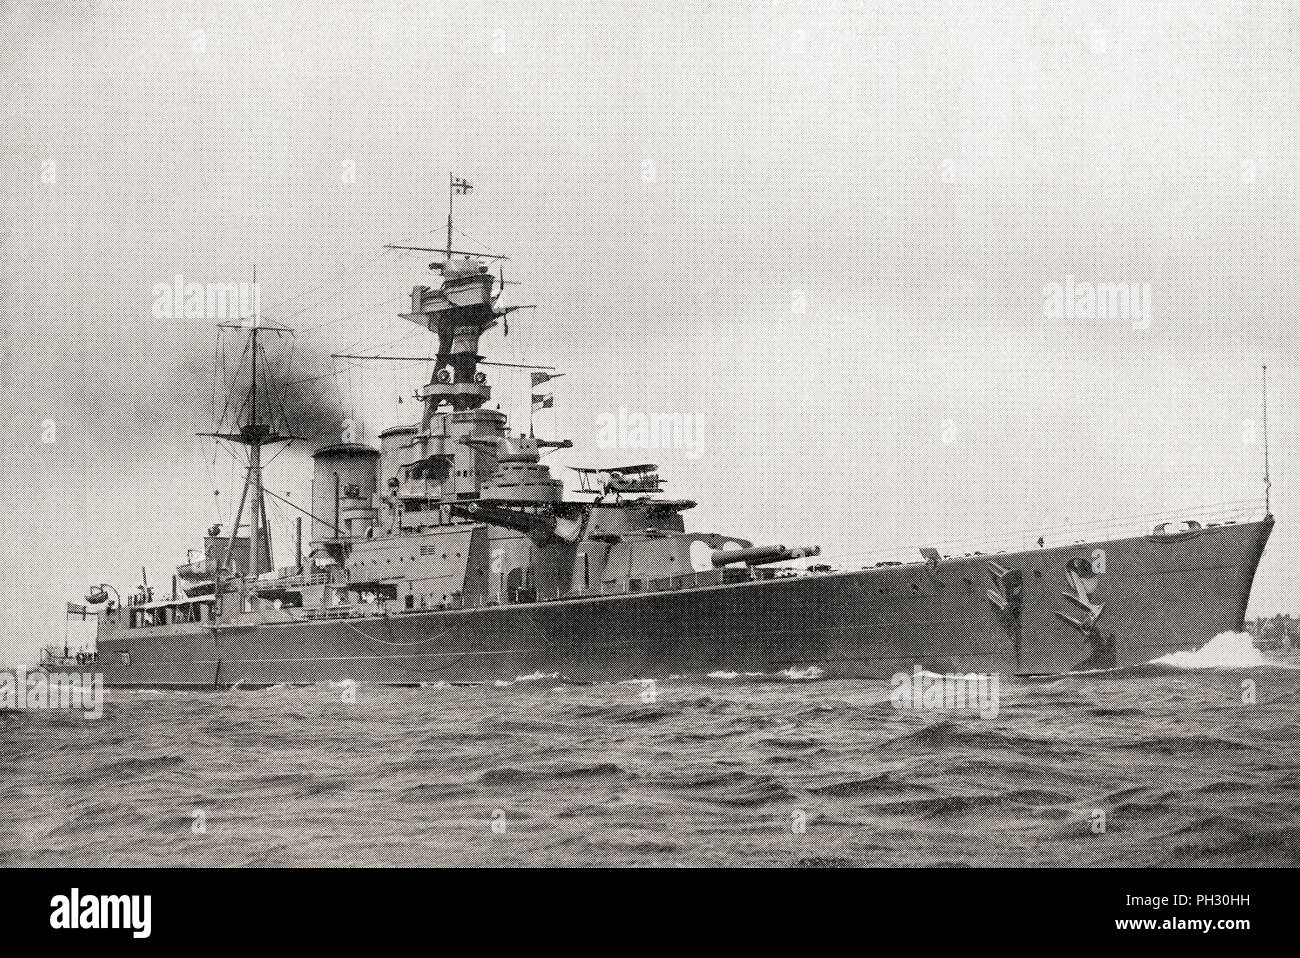 HMS Hood, der größten und letzten Schlachtkreuzer der britischen Royal Navy, hier gesehen, die ein Flugzeug auf dem Turm. Aus dem Buch von Schiffen, veröffentlicht C 1920. Stockfoto